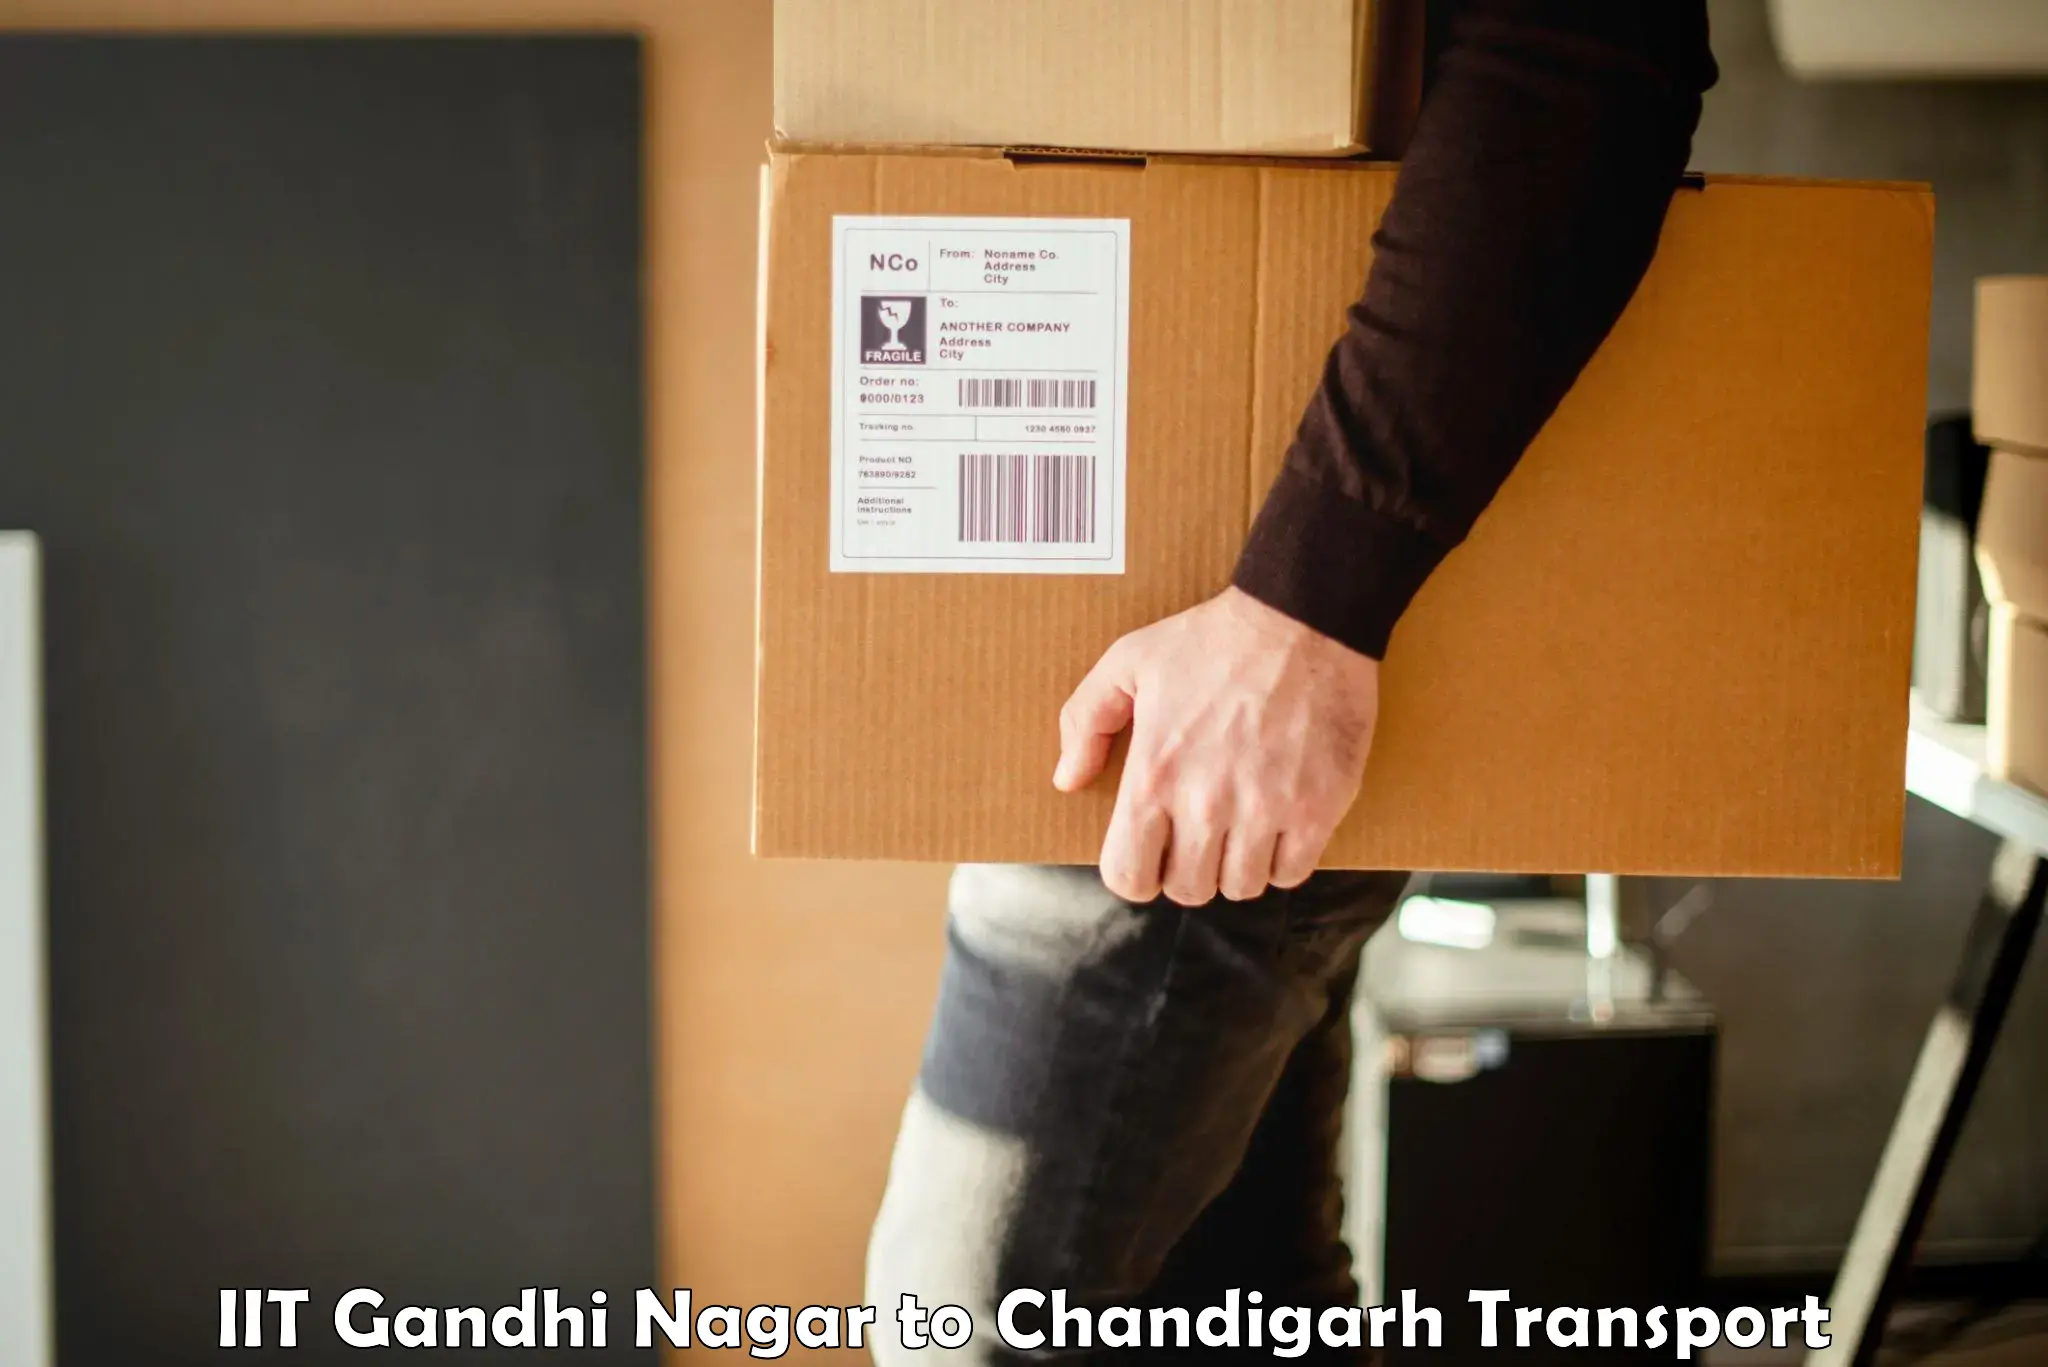 Furniture transport service IIT Gandhi Nagar to Chandigarh